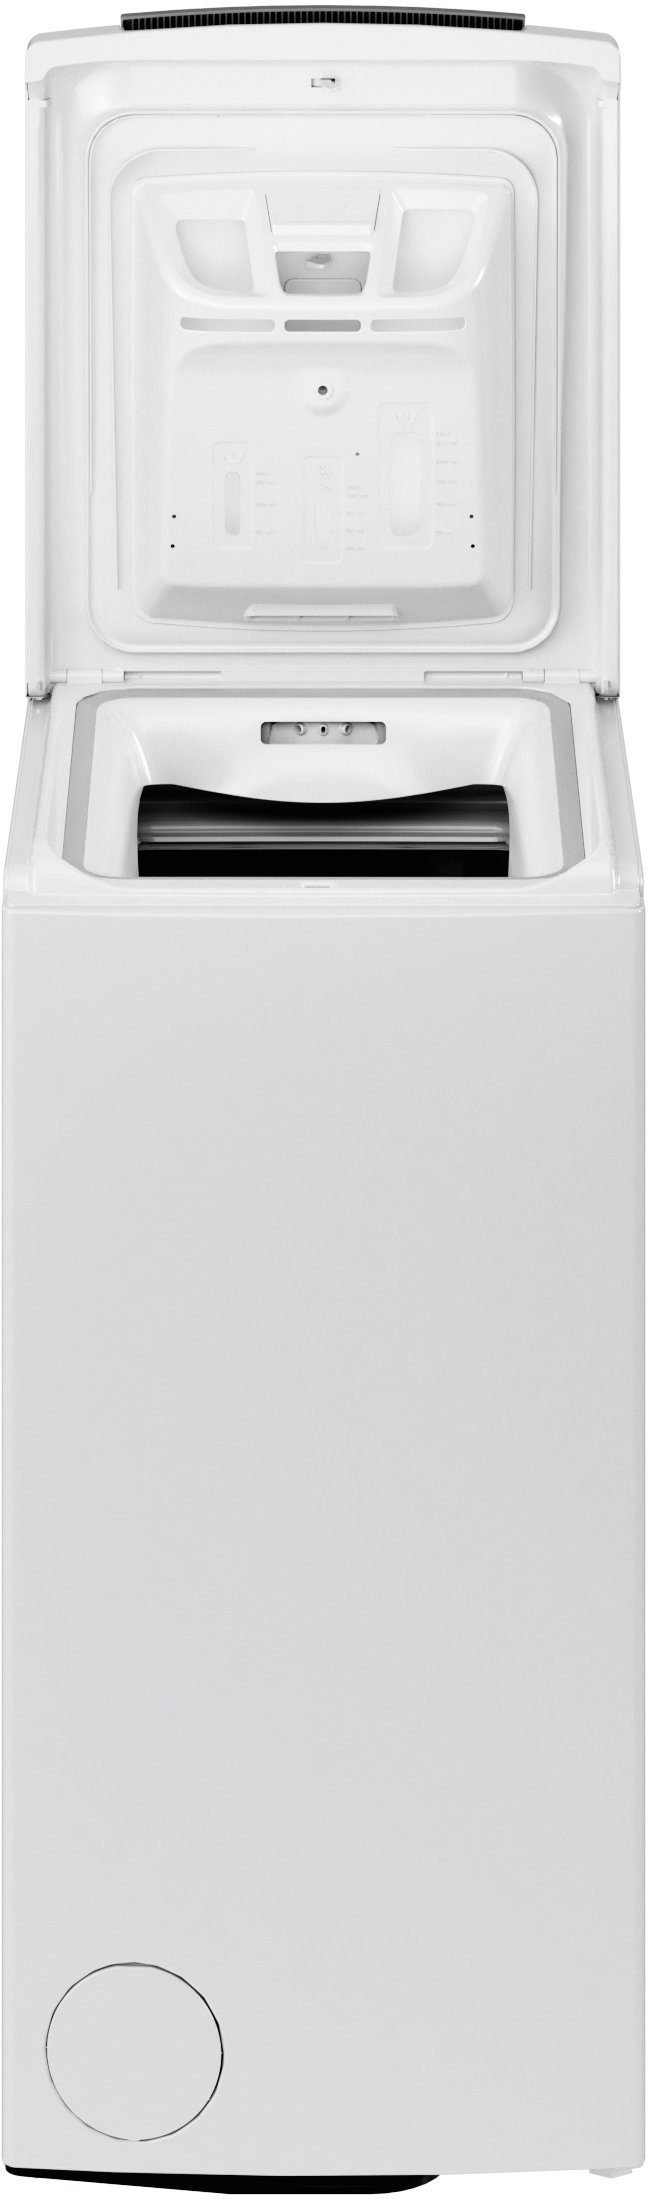 BAUKNECHT Waschmaschine Toplader 1200 6313 C, U/min WAT kg, 6